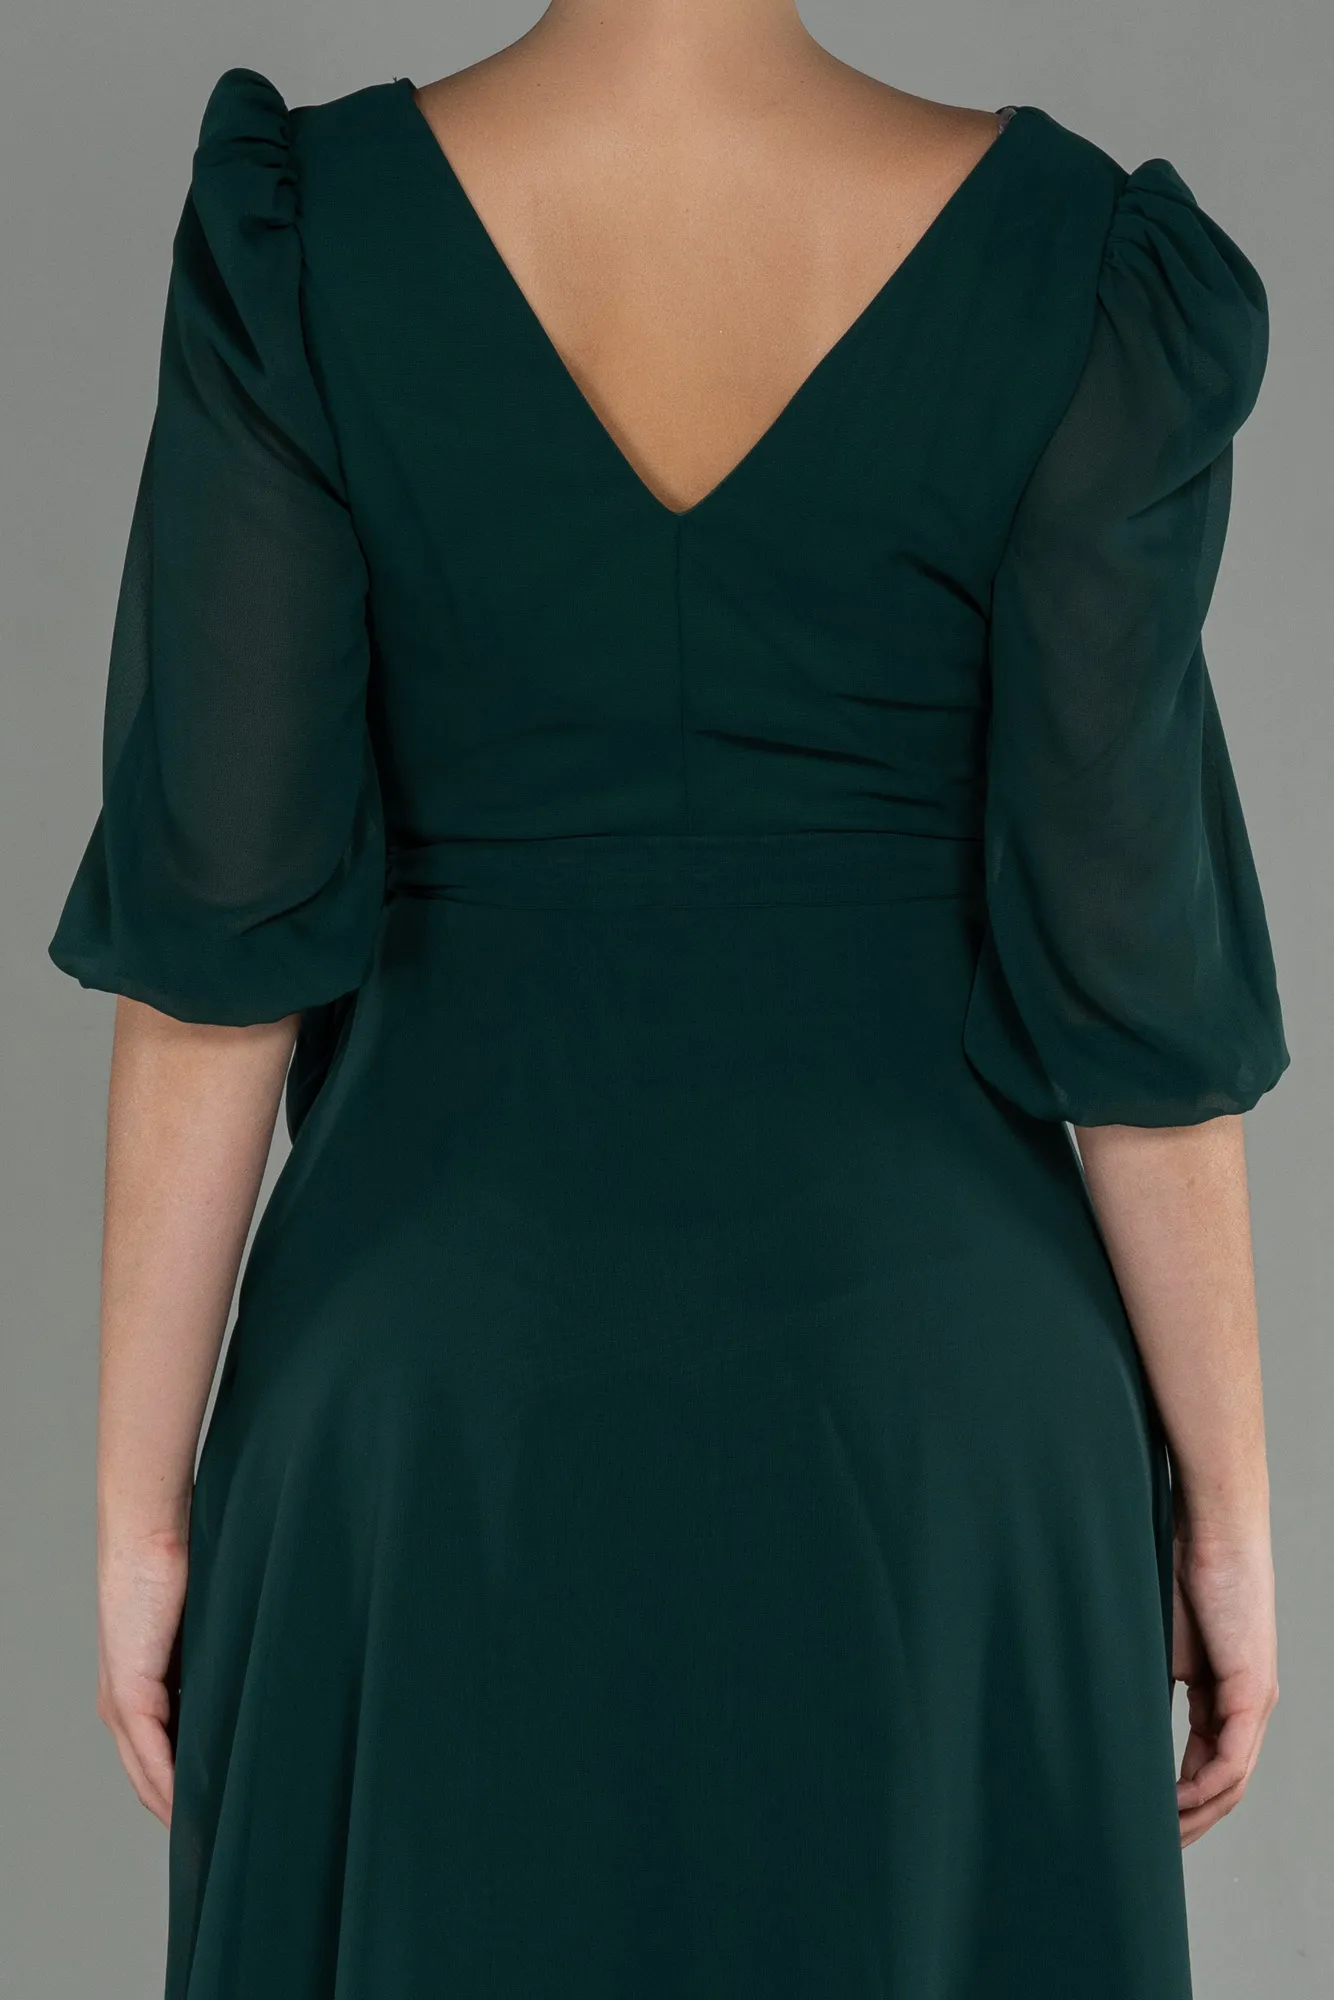 Emerald Green-Long Chiffon Invitation Dress ABU1729